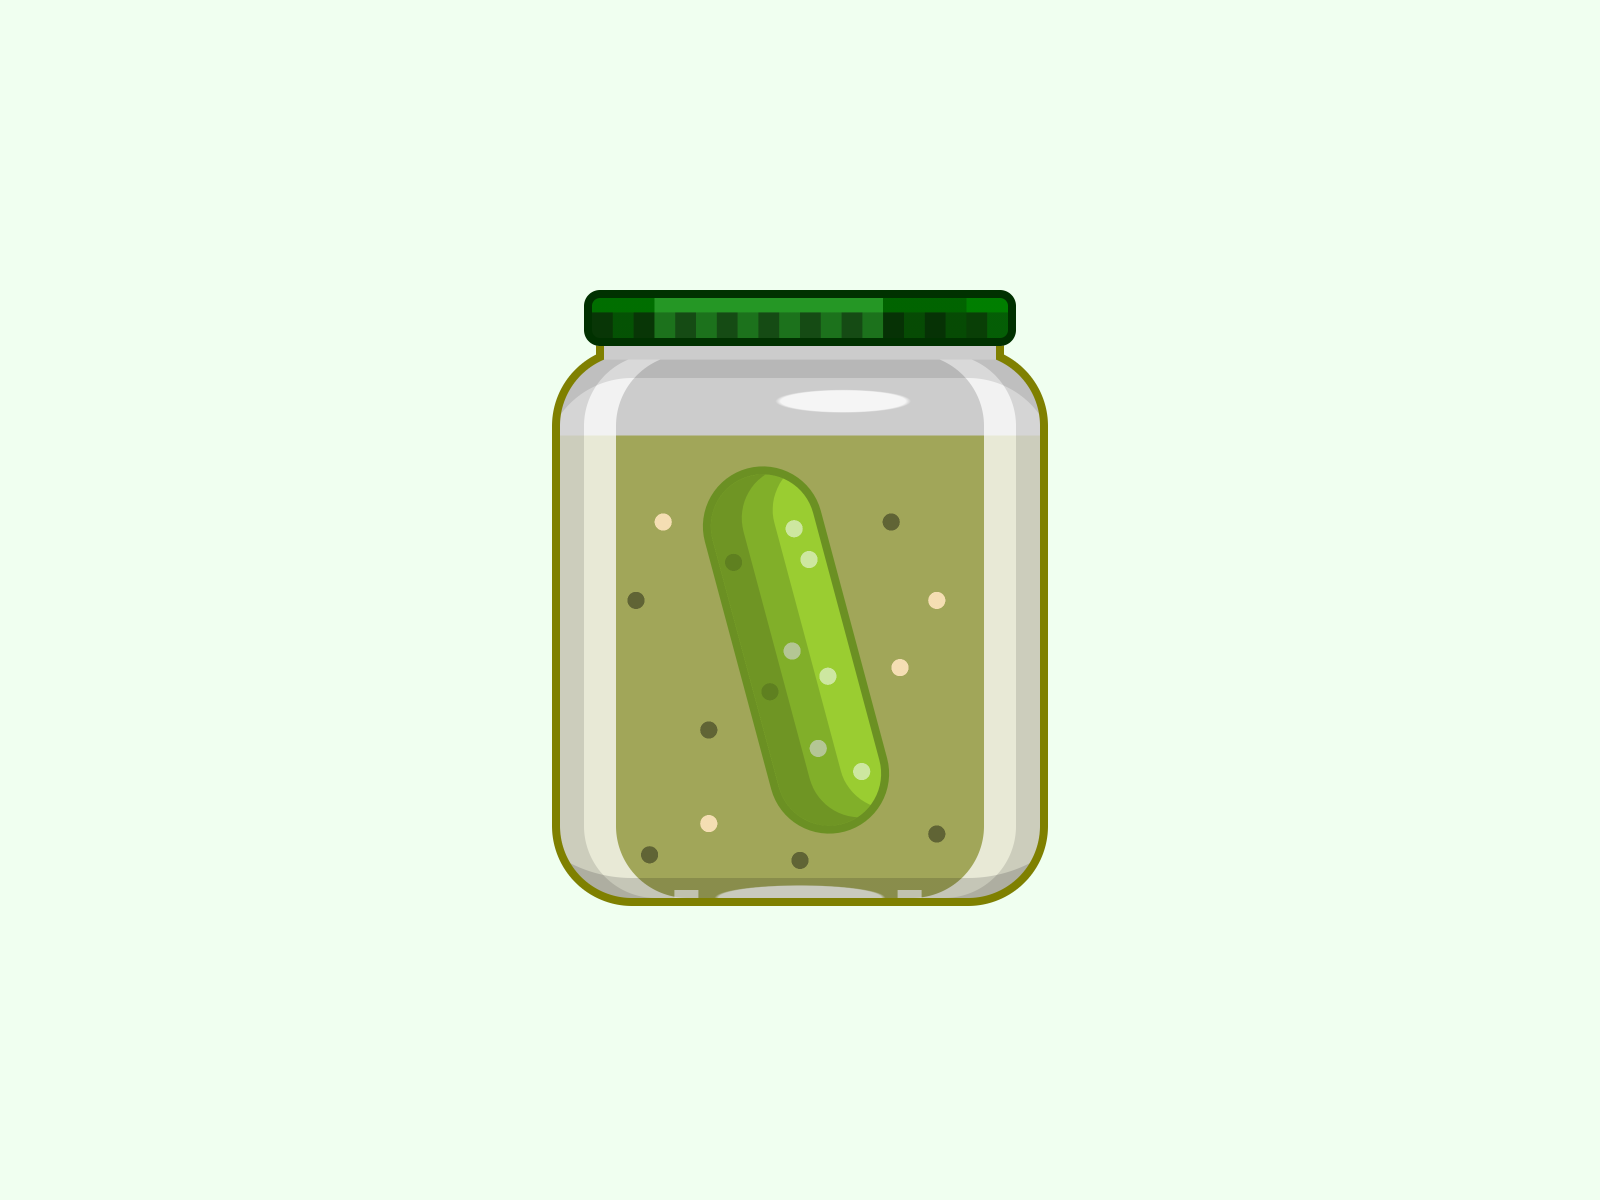 pickle jar drawing